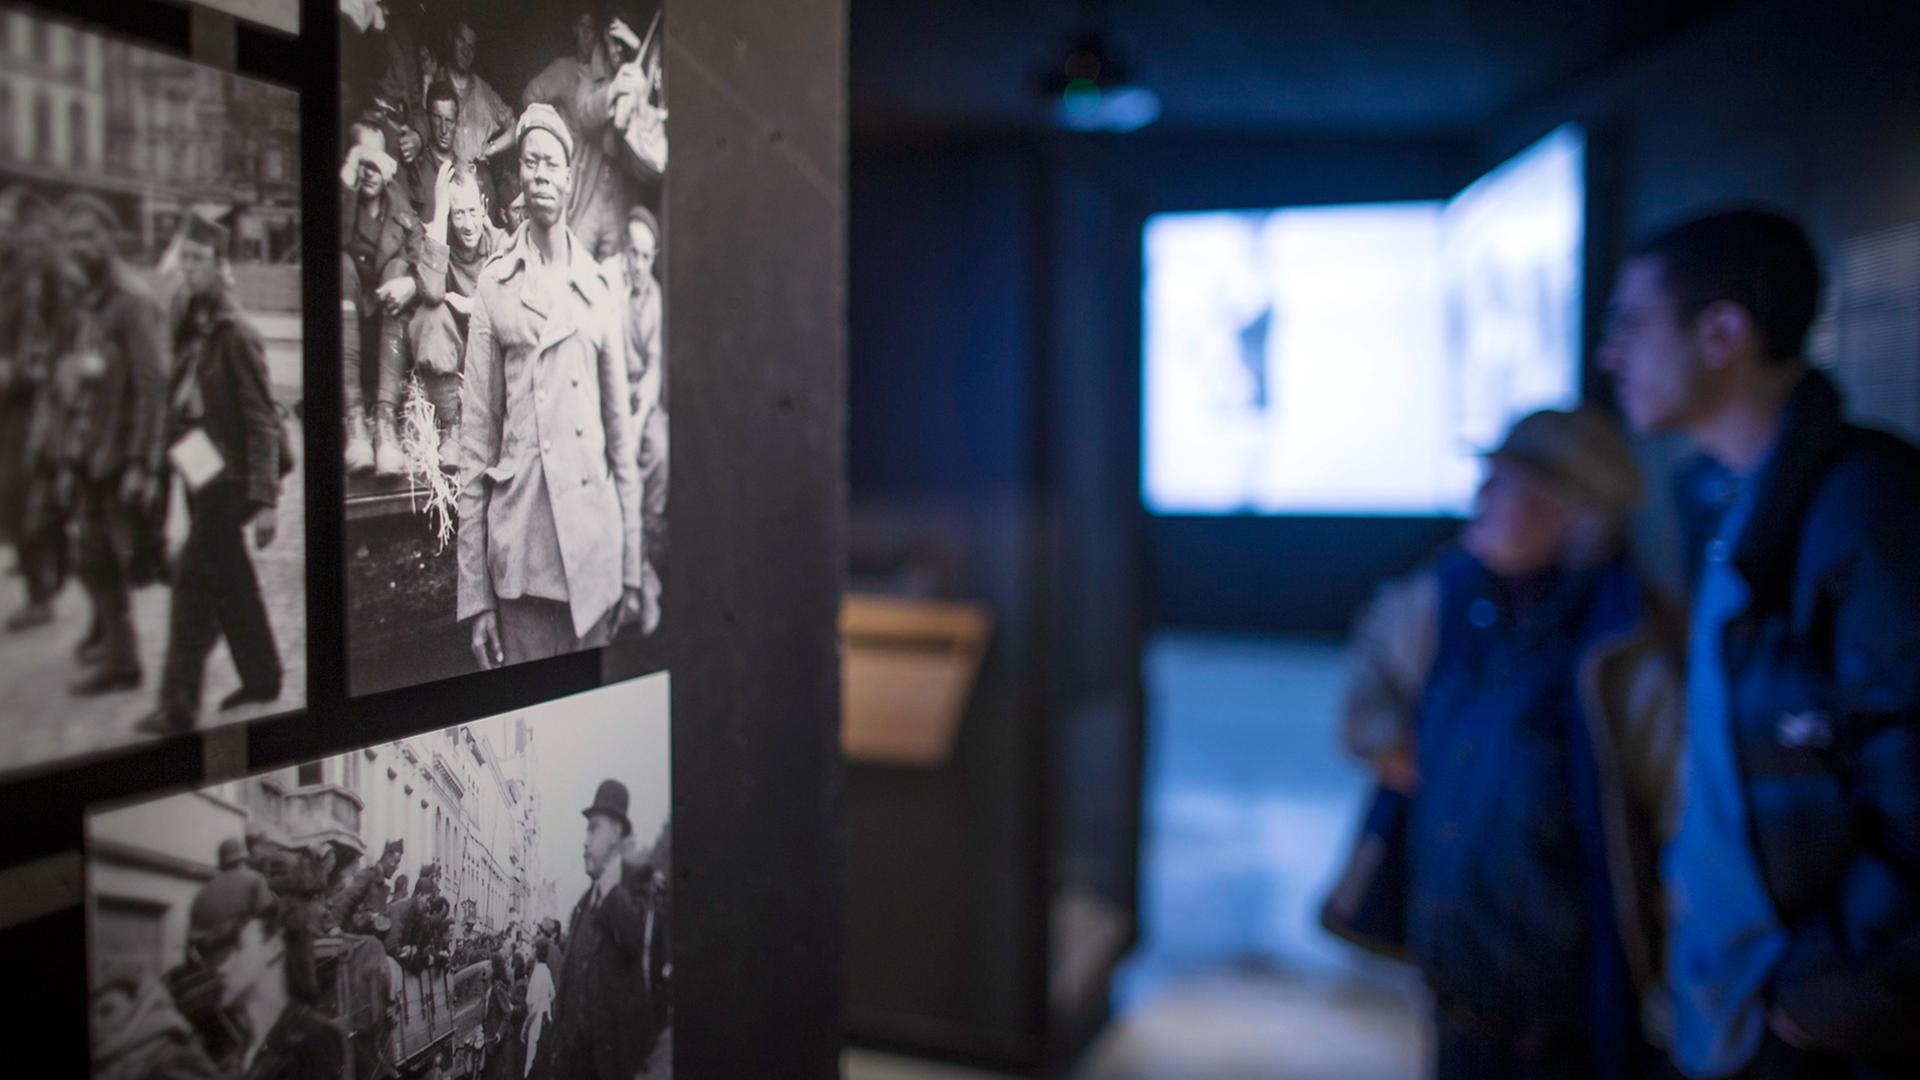 Fotos im 2015 eröffneten Memorial Museum in der Kulturhauptstadt Mons, die einen französischen Soldaten im Zweiten Weltkrieg zeigen. Im Hintergrund sind Videoleinwände zu sehen.